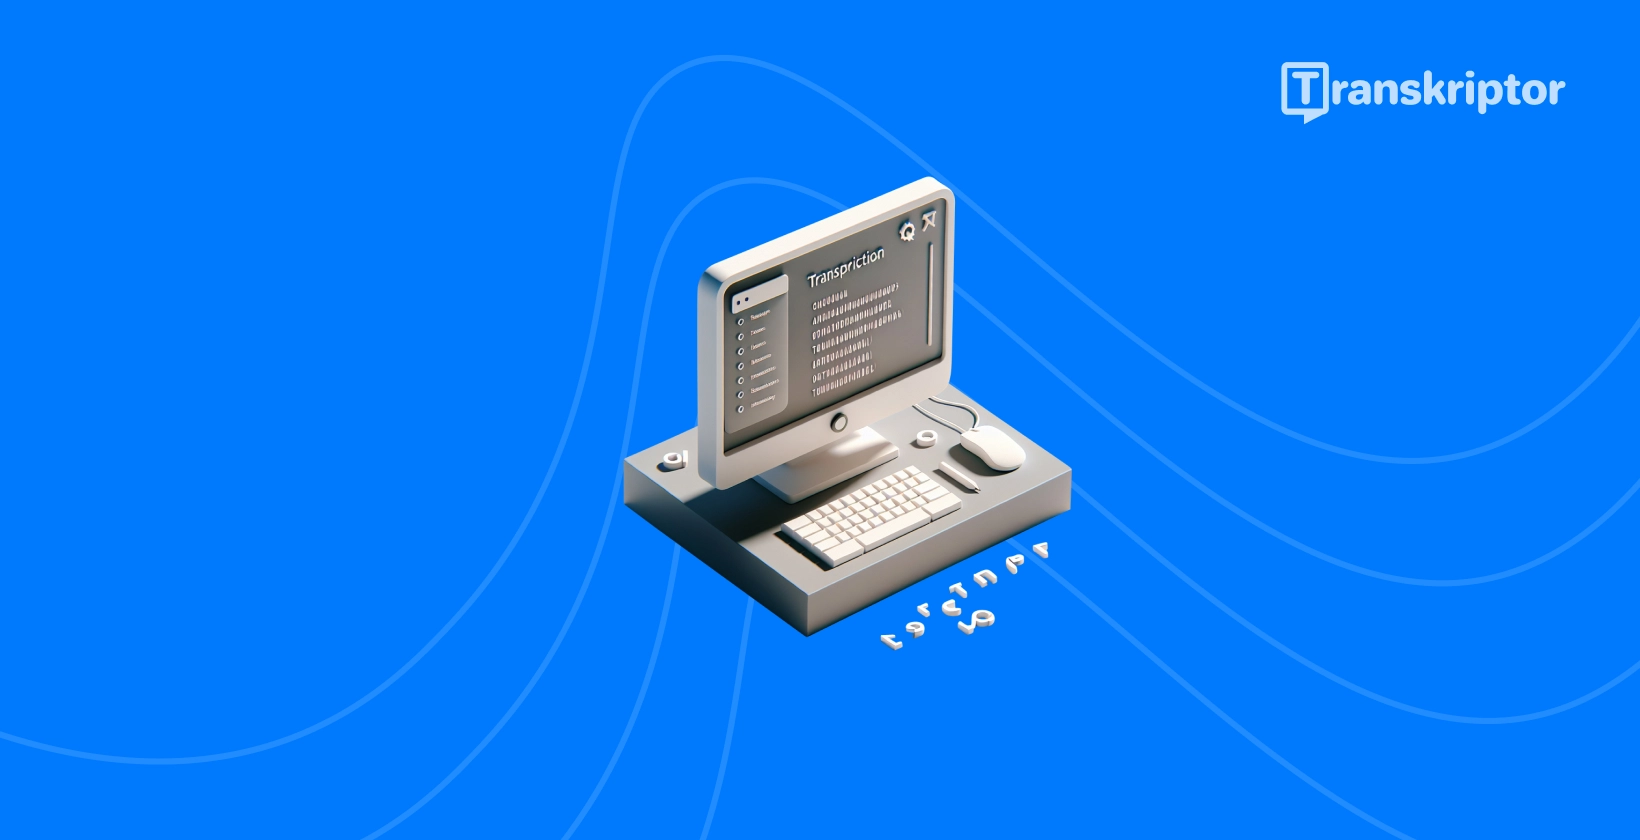 Gambaran simplistik perisian transkripsi audio MuseScore pada desktop.